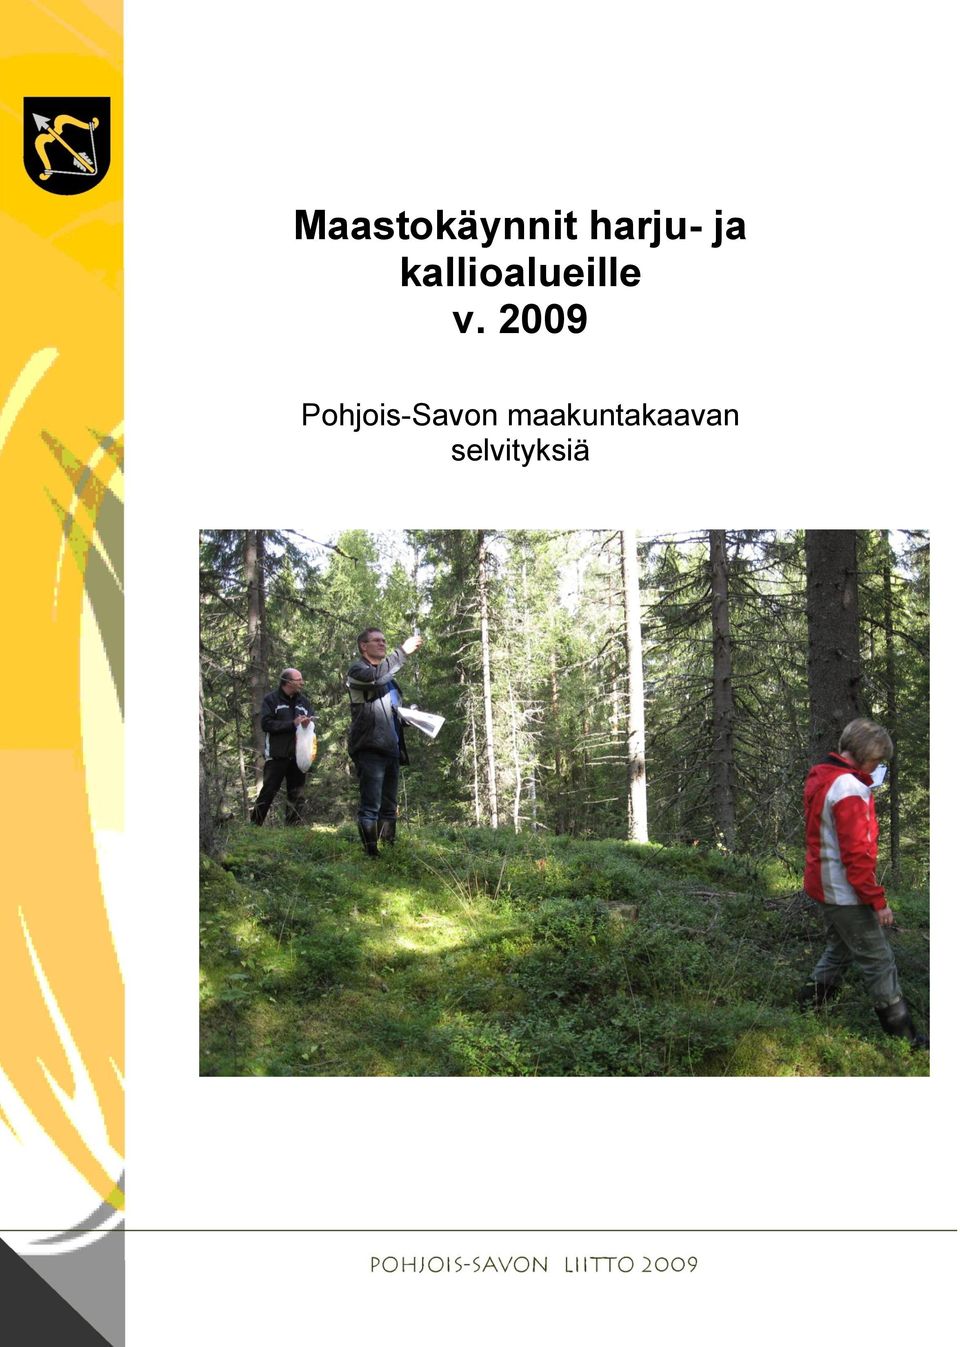 2009 Pohjois-Savon